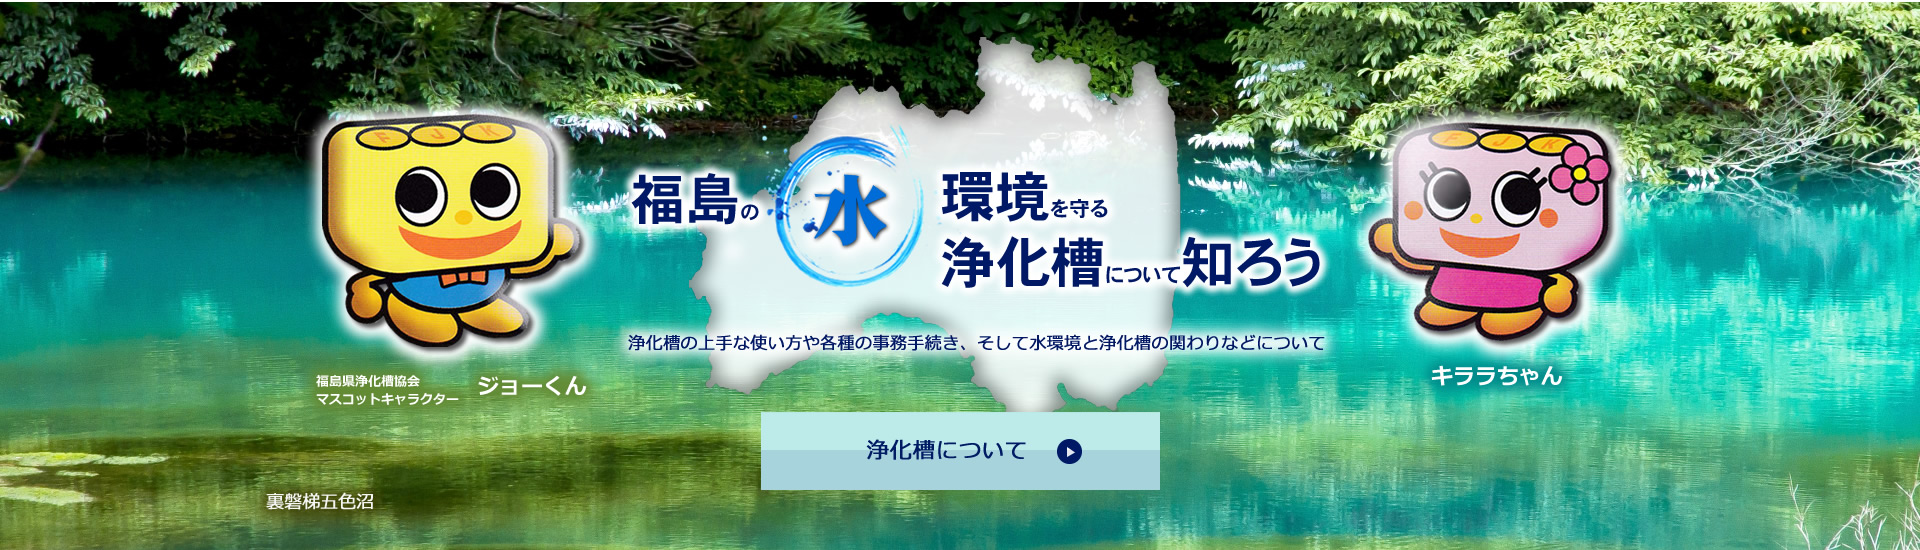 福島の水環境を守る浄化槽について